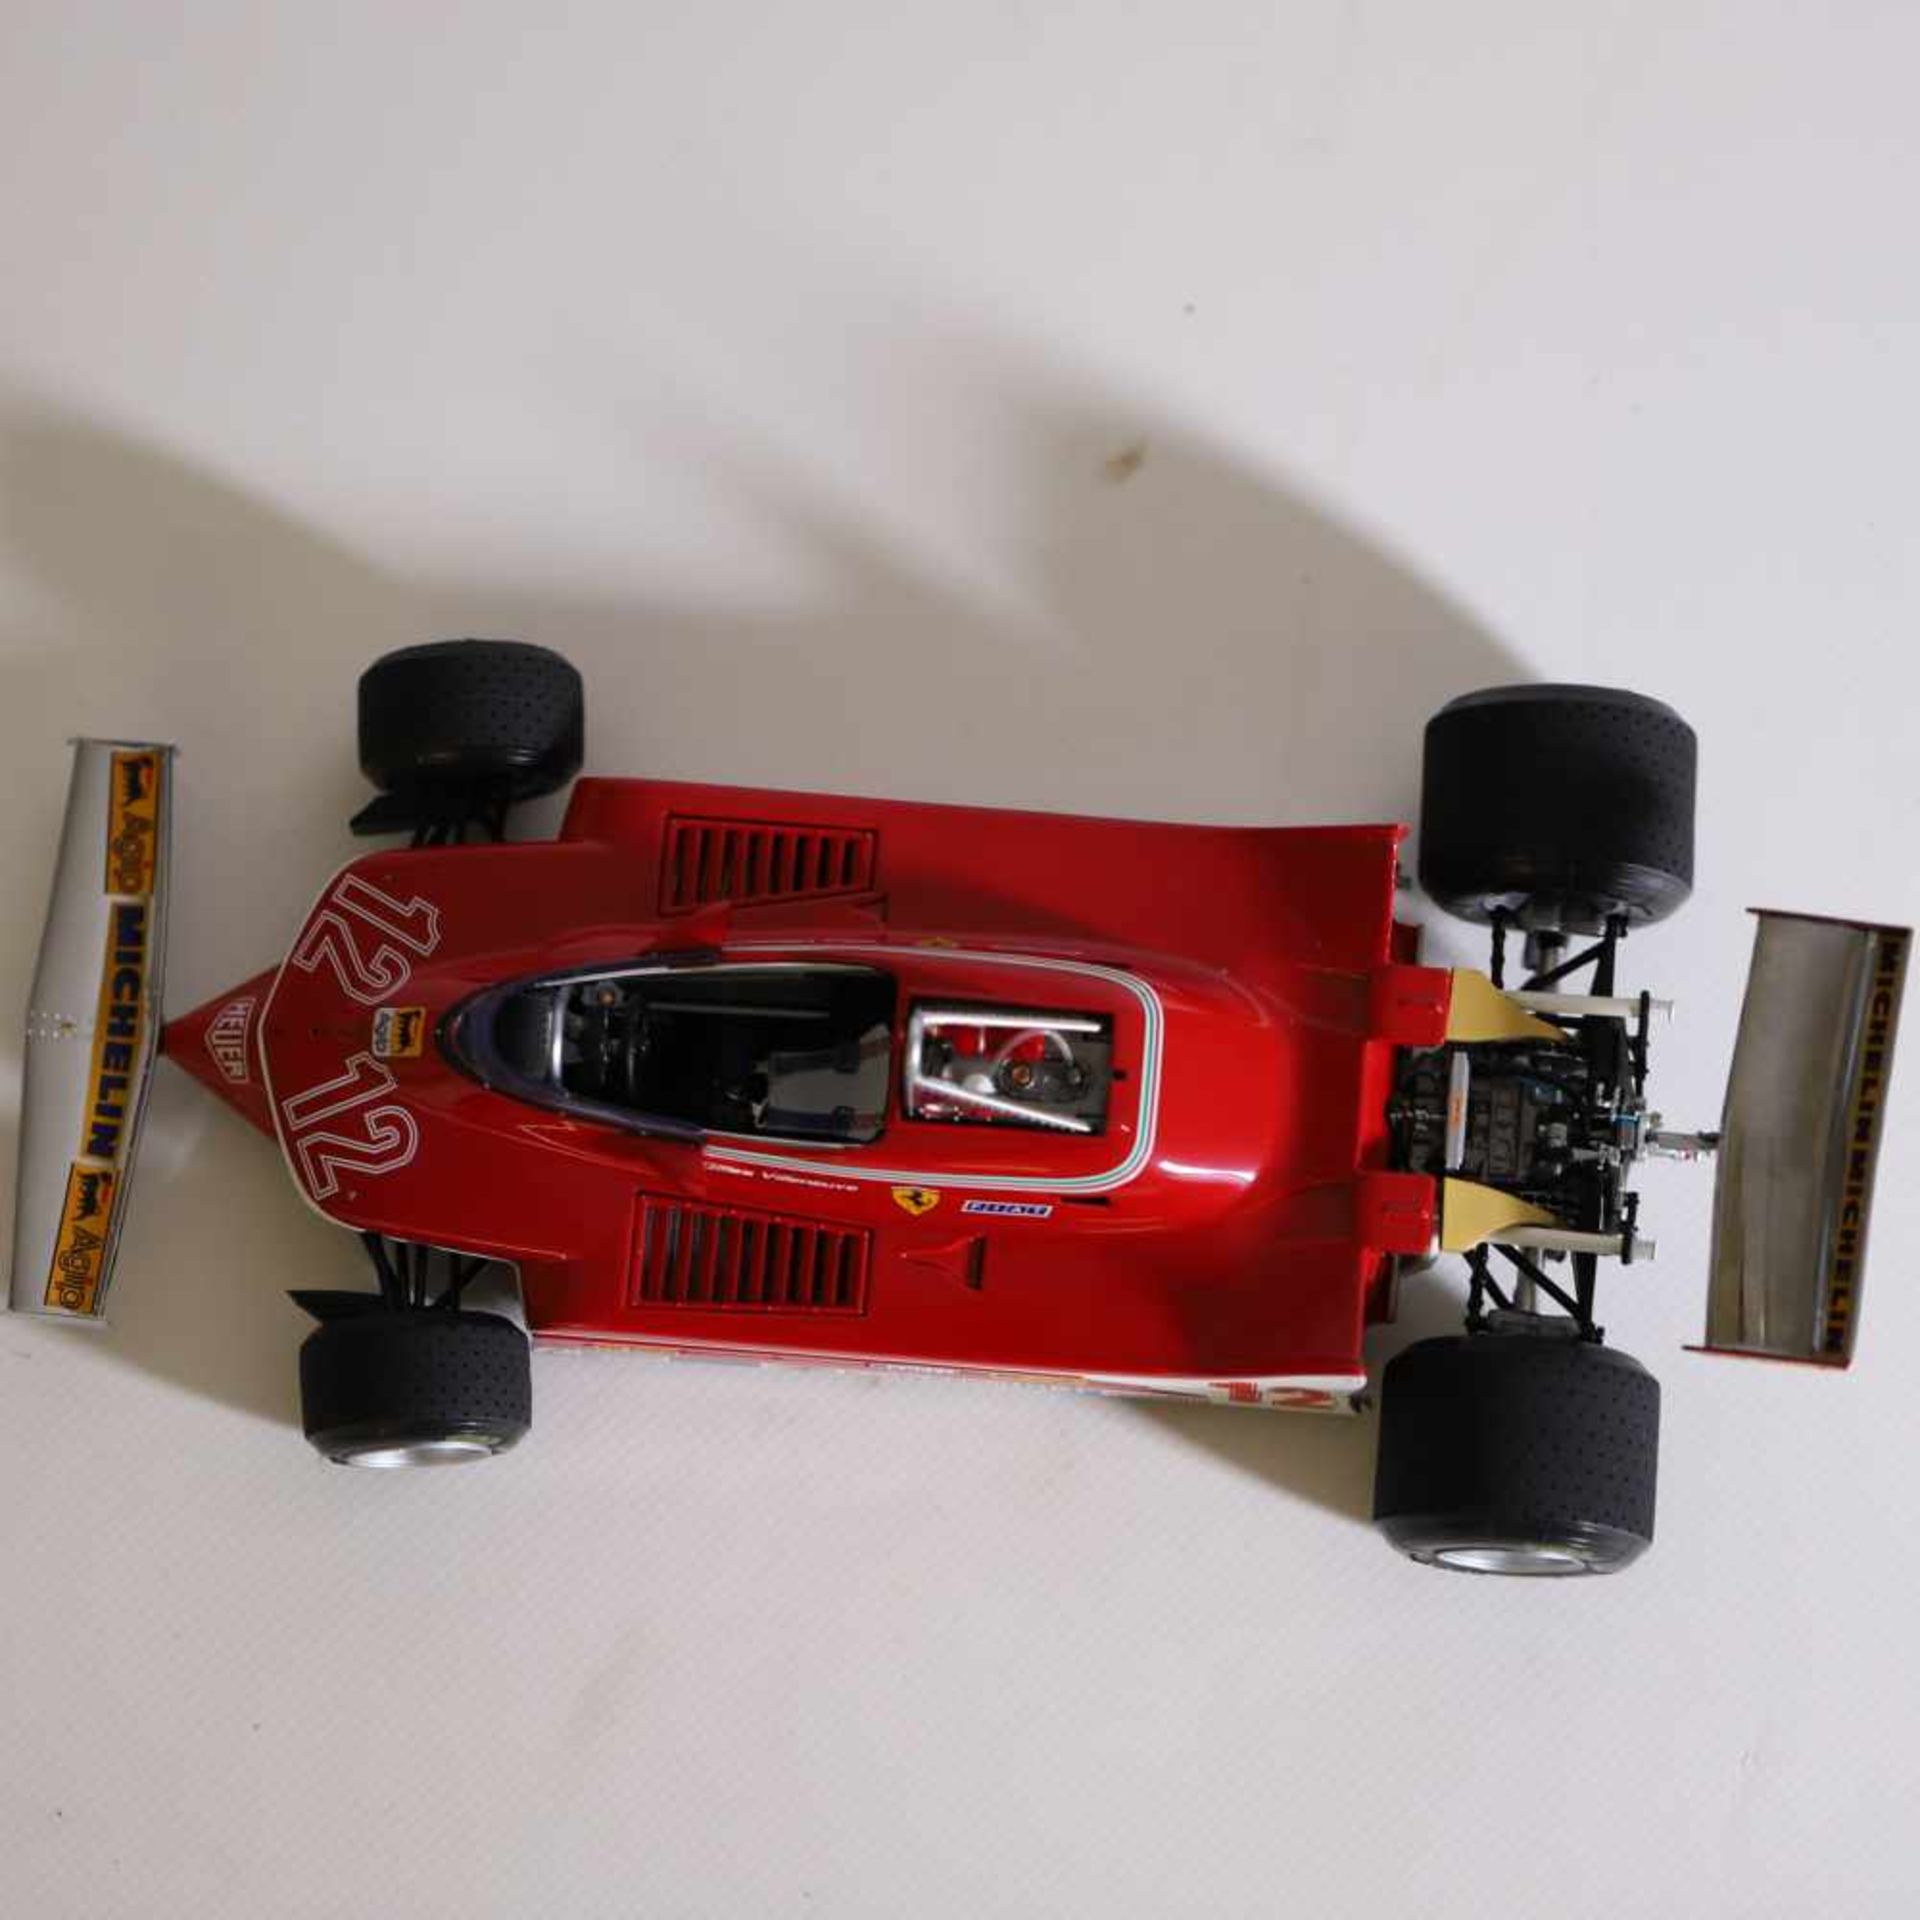 Exoto 1:18 Ferrari 312 T 4 Gilles Villeneuve, GP France 1979, guter Zustand- - -20.00 % buyer's - Bild 2 aus 2